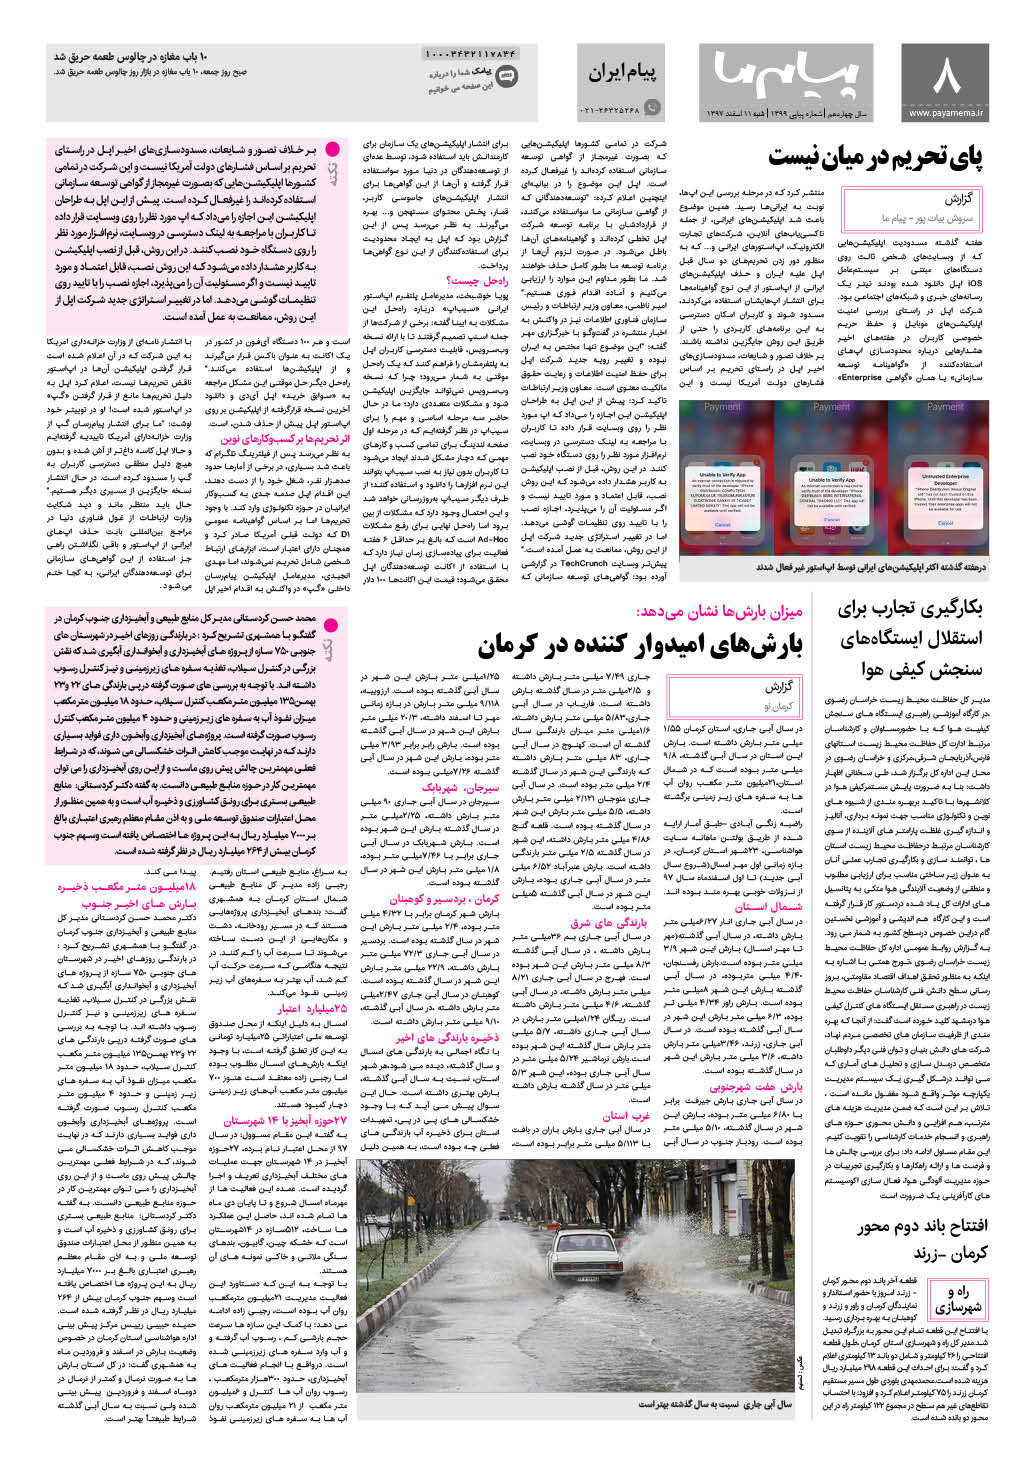 صفحه پیام ایران شماره 1399 روزنامه پیام ما